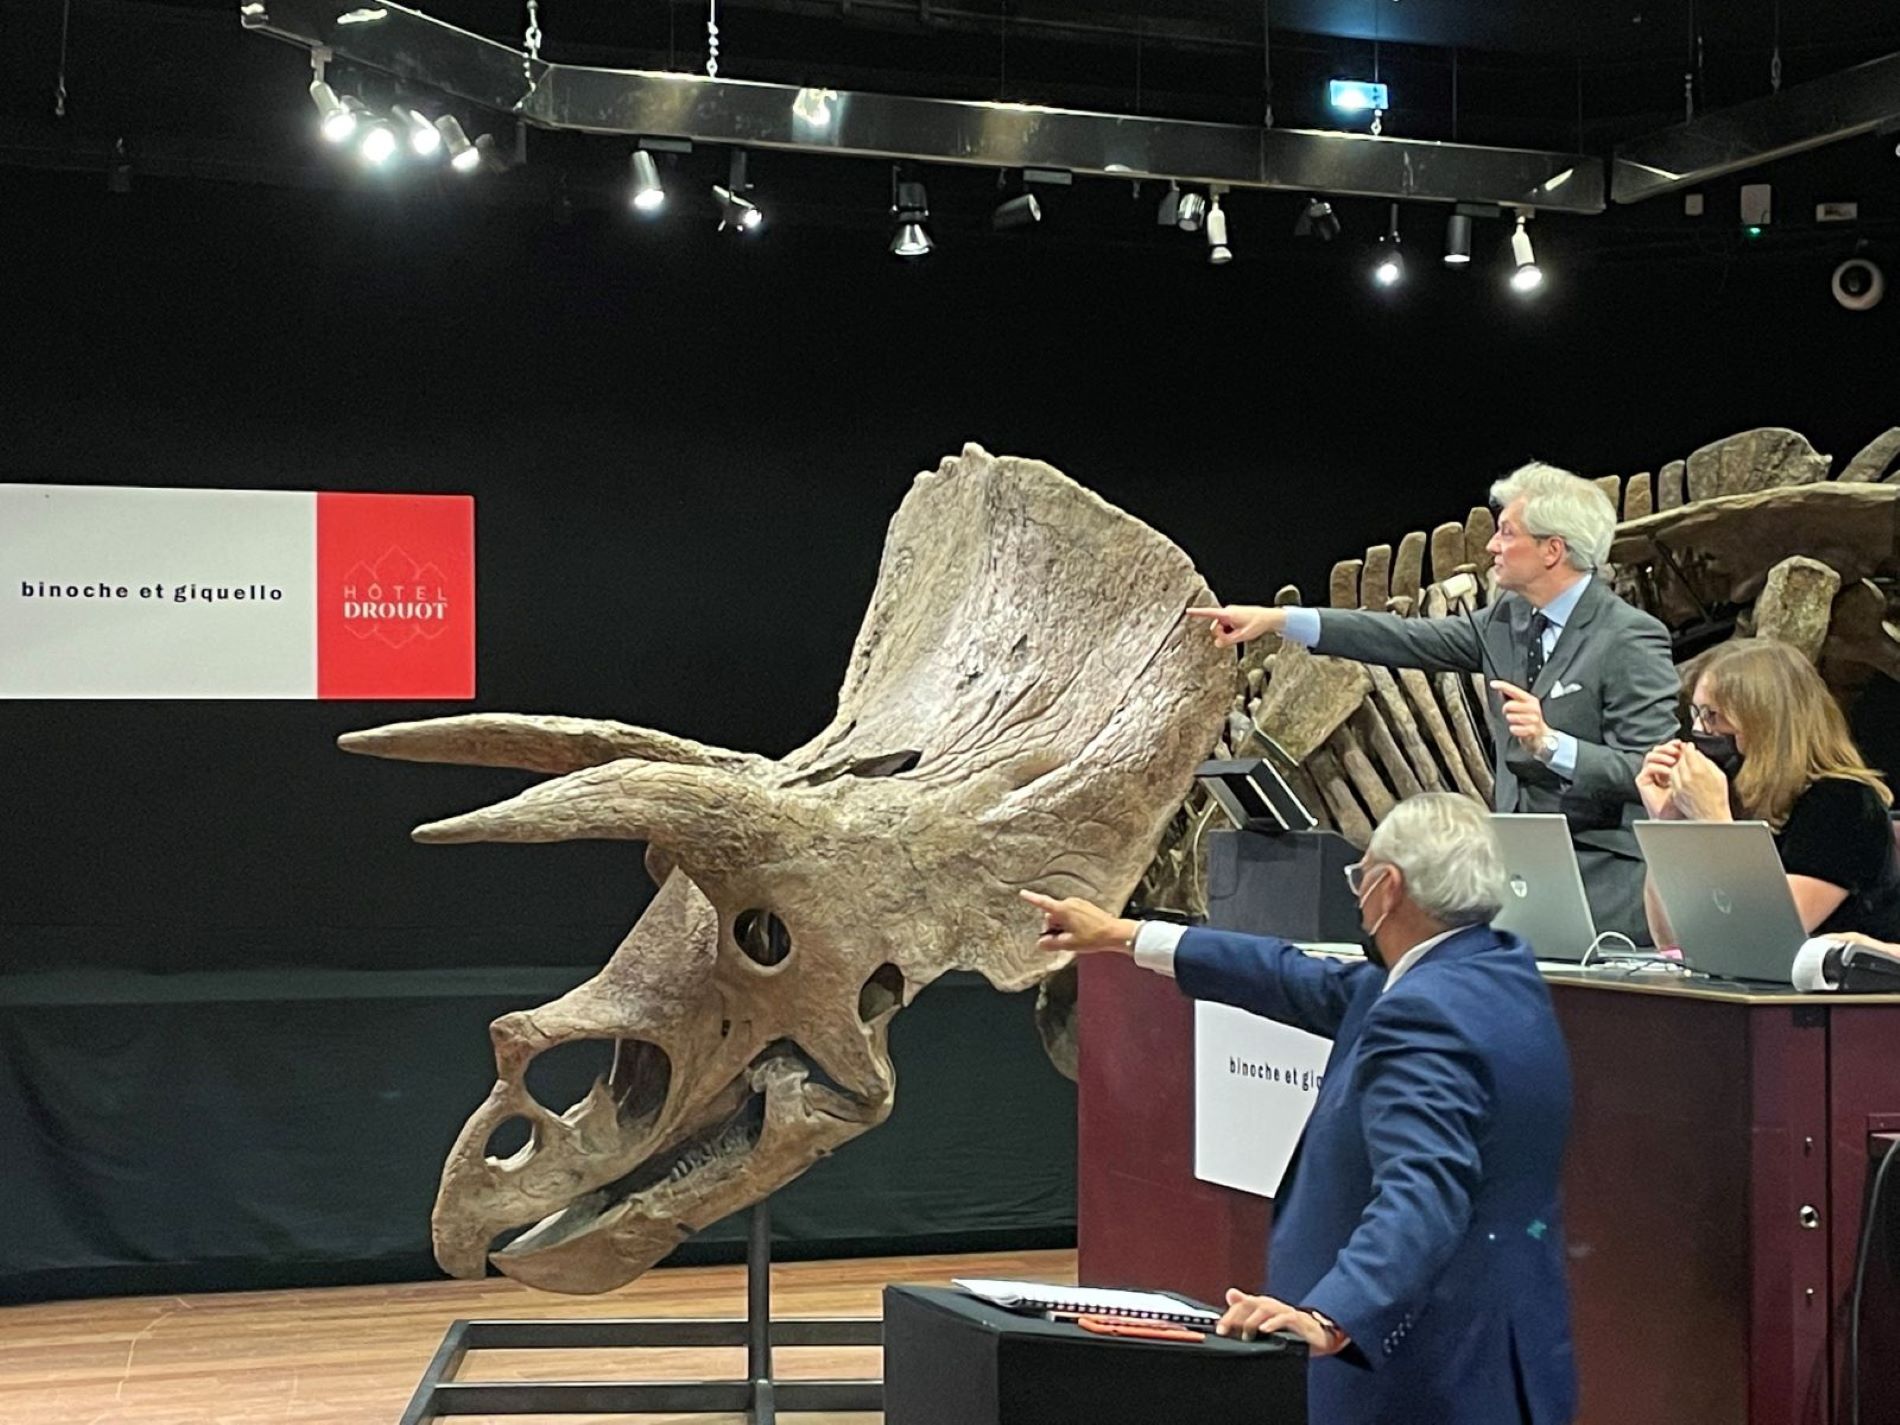 Más de 6 millones de euros, el precio del mayor triceratops encontrado jamás